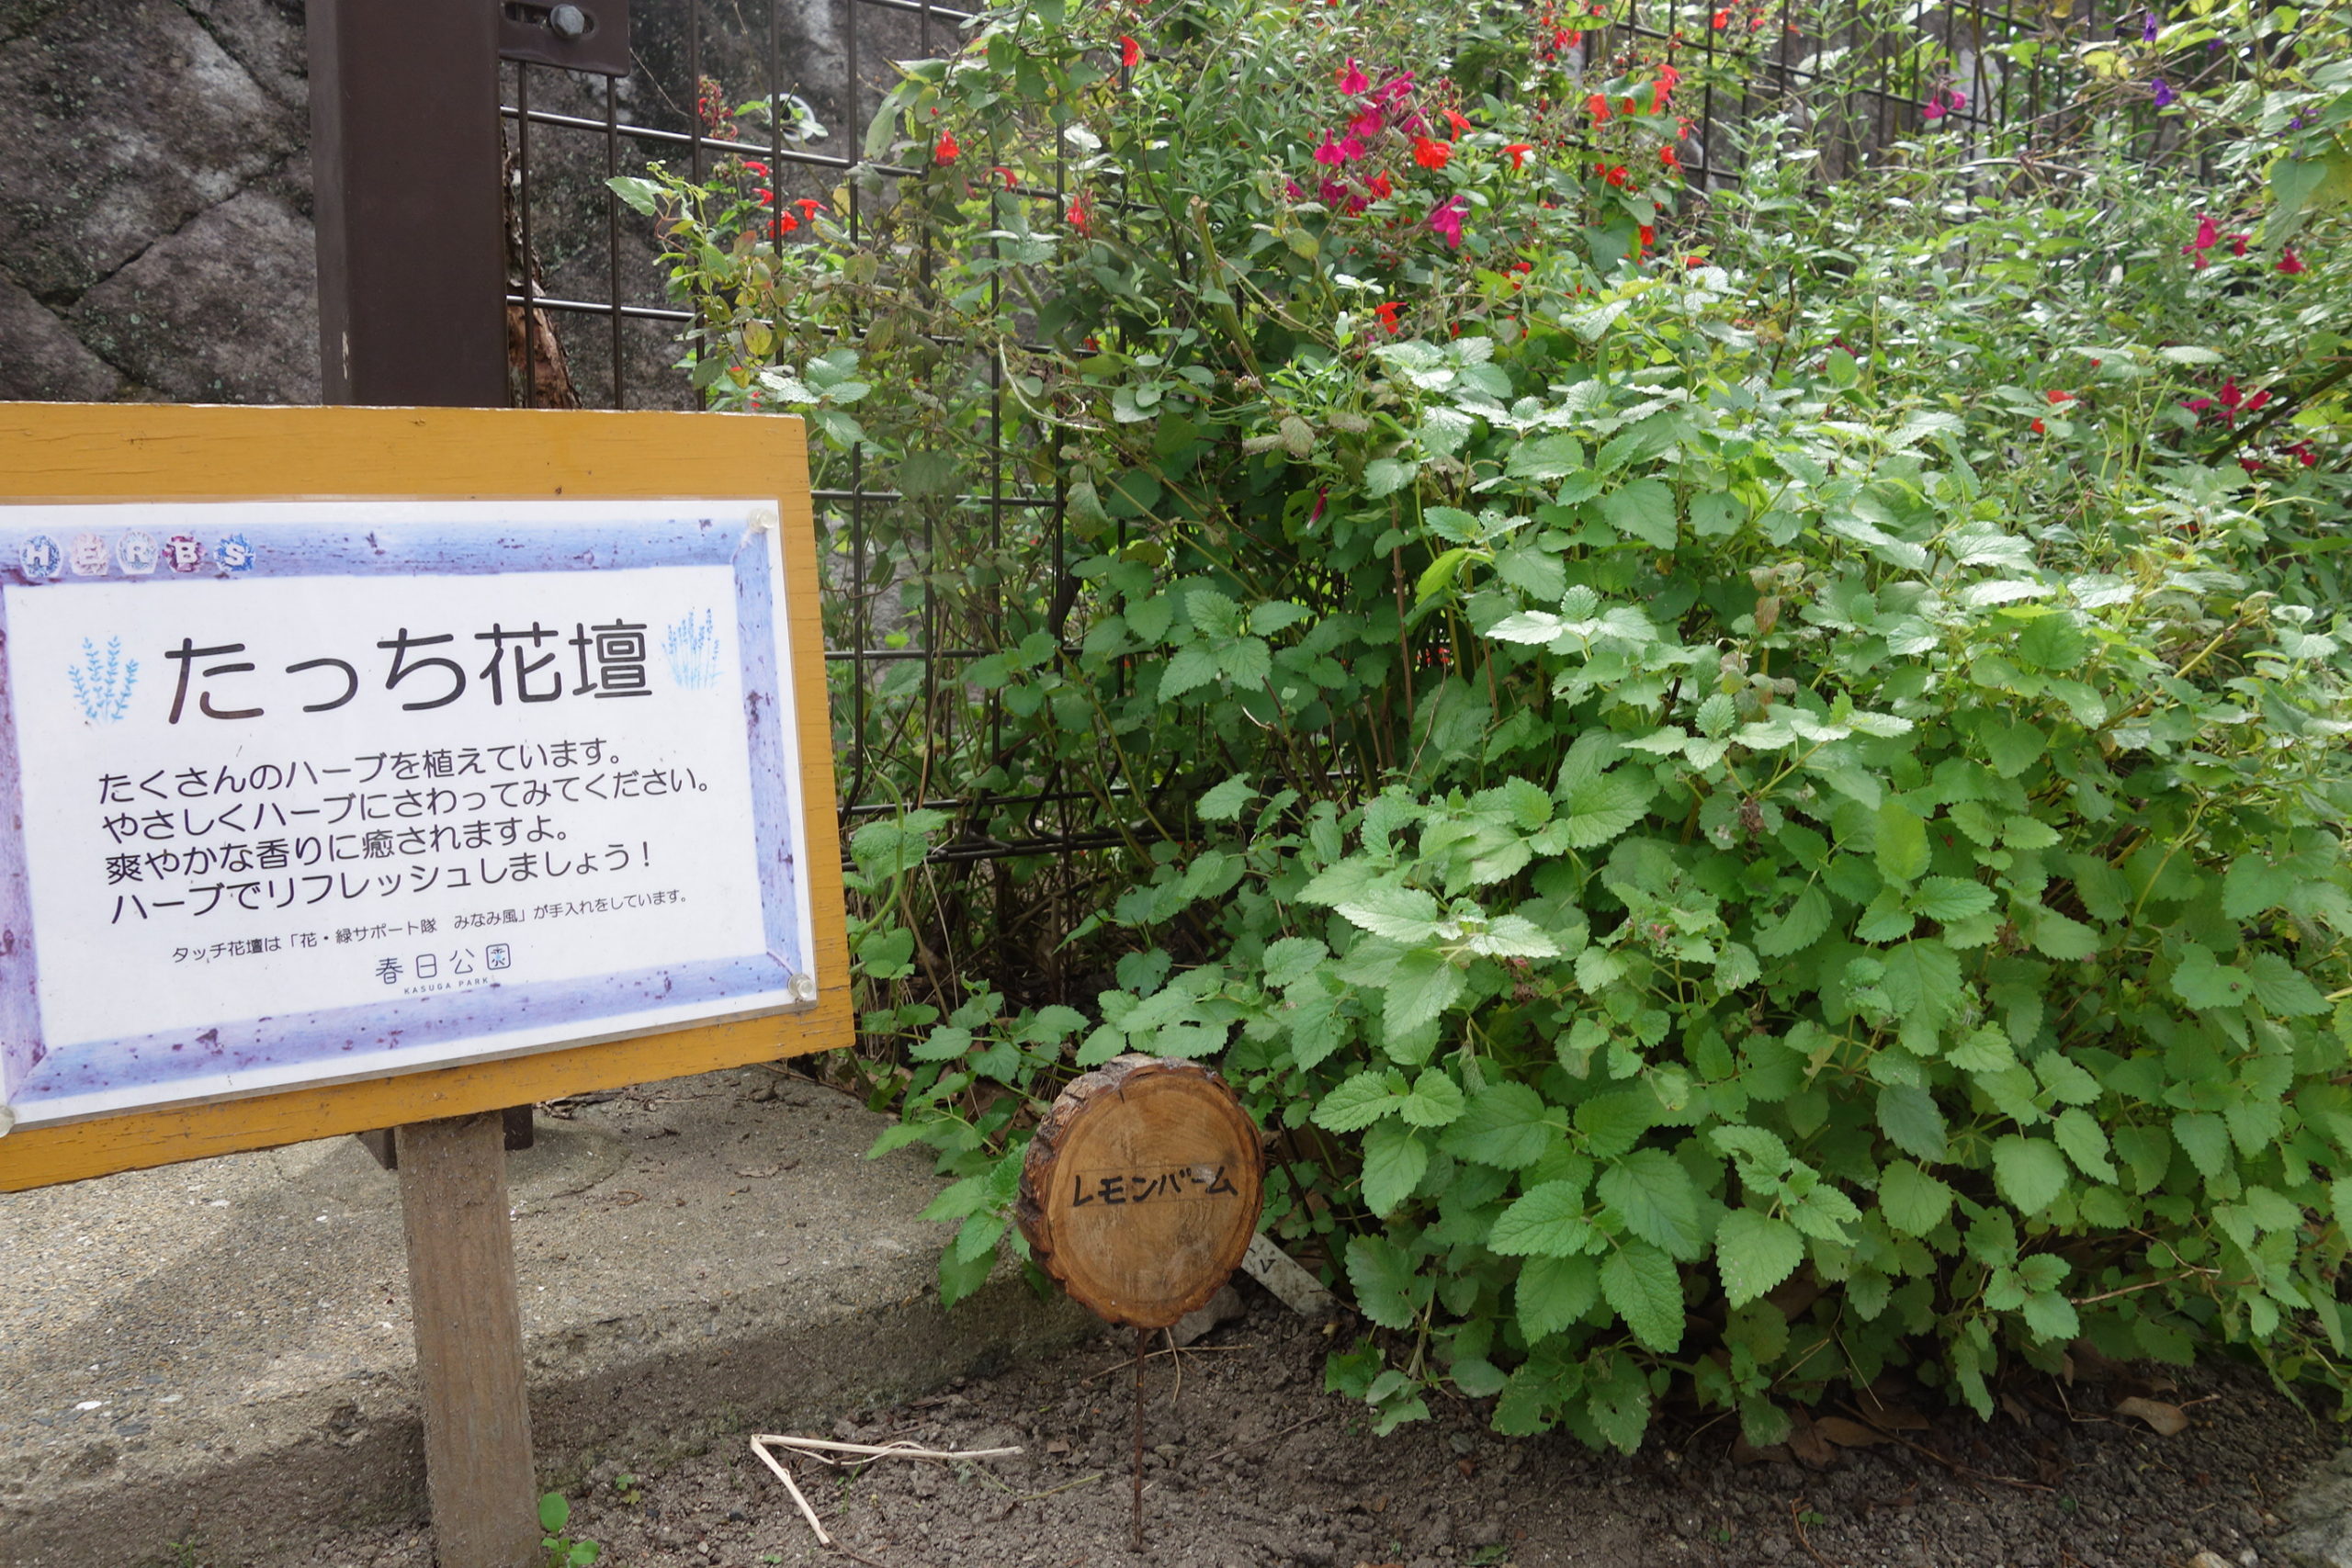 ハーブ植物の名前 福岡県営春日公園